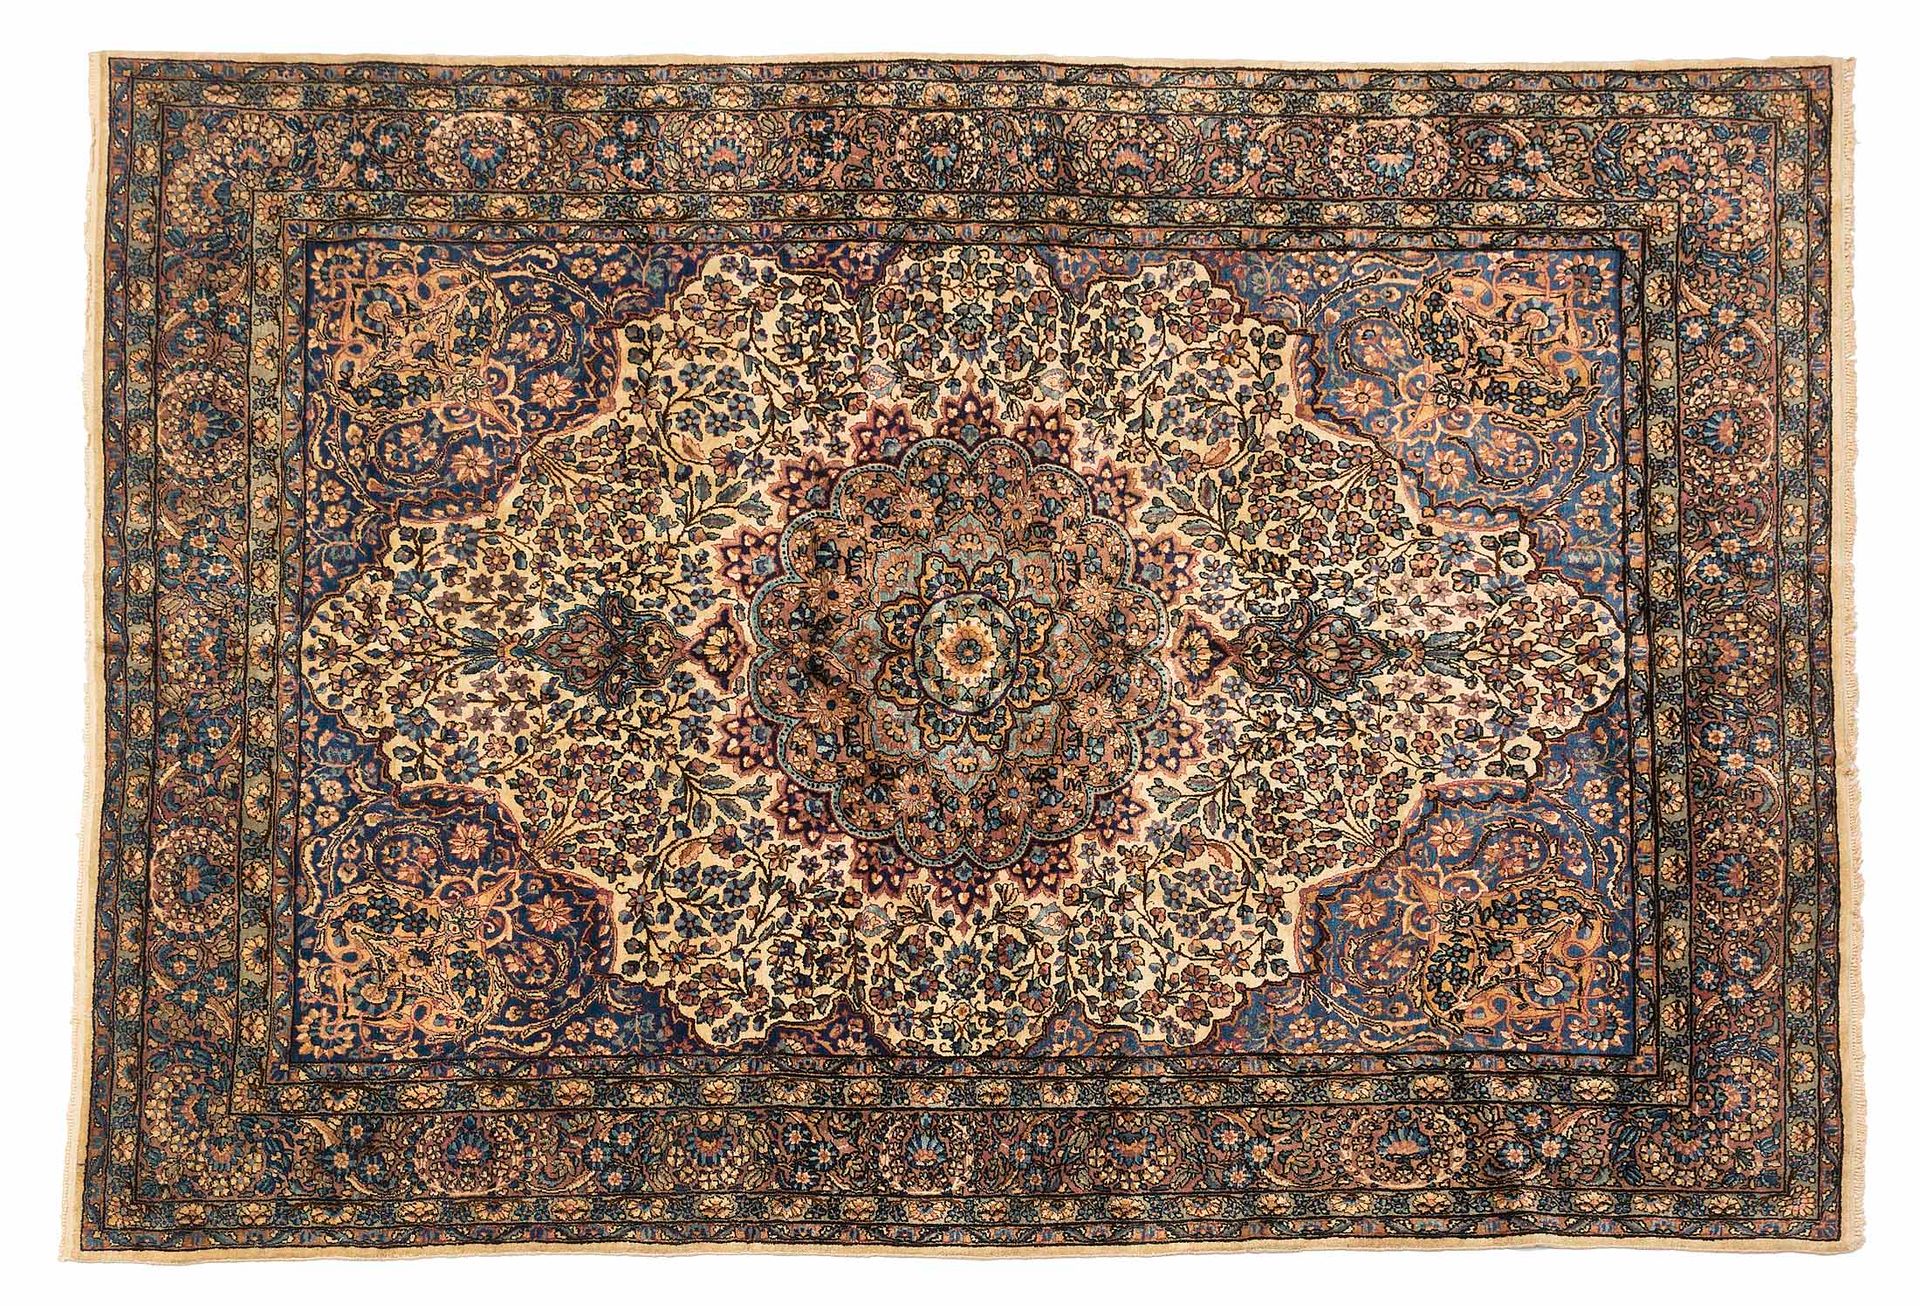 Null 基尔曼地毯（伊朗），约1930年

尺寸：339 x 241厘米。

技术特点 : 羊毛天鹅绒，棉质底板。

一个华丽的象牙色、栗色、绿松石色和古金色&hellip;